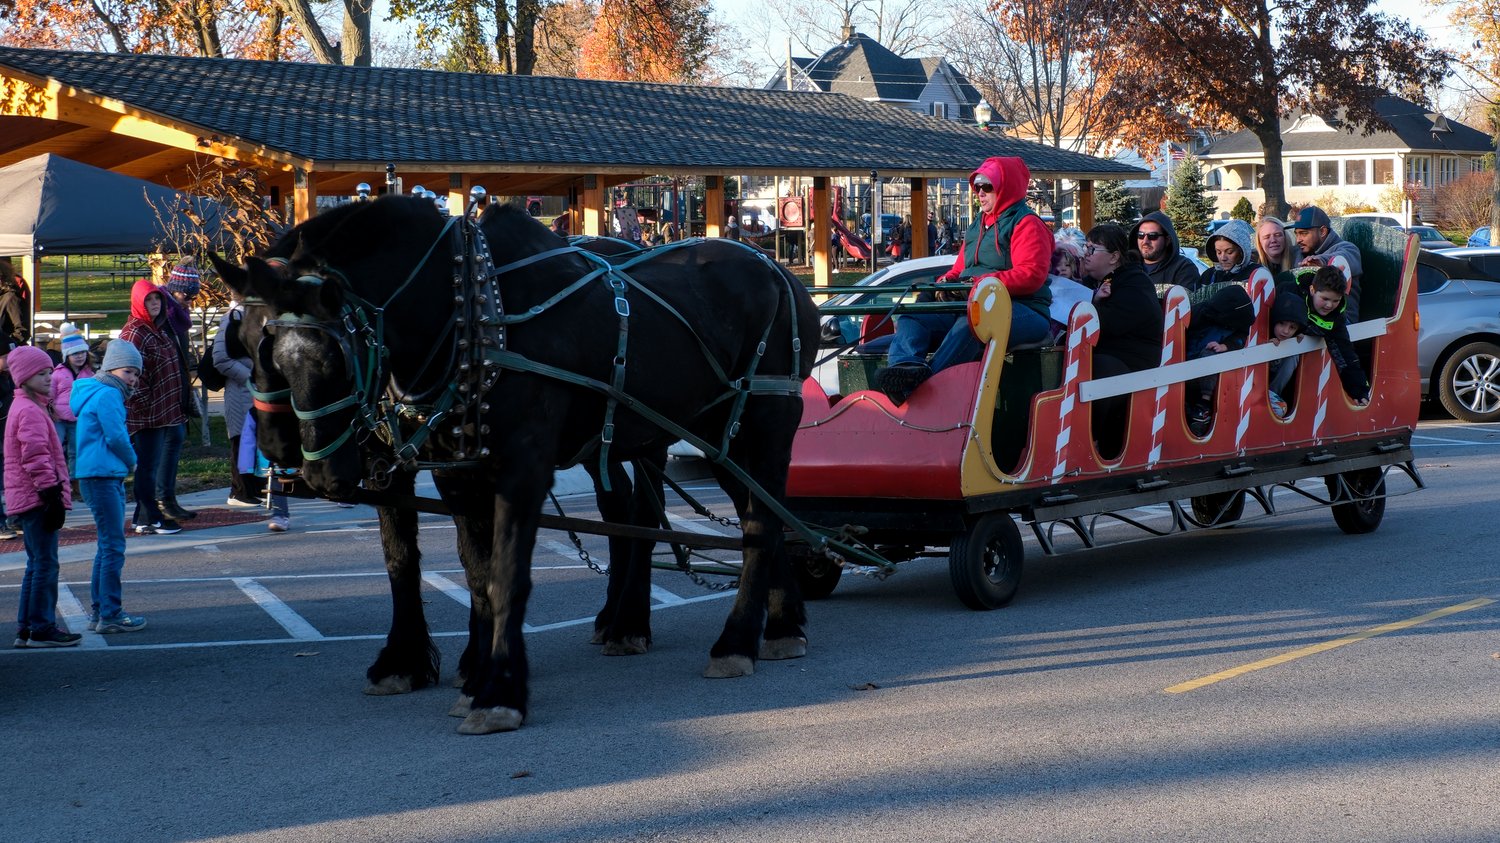 Horse drawn sleigh ride.